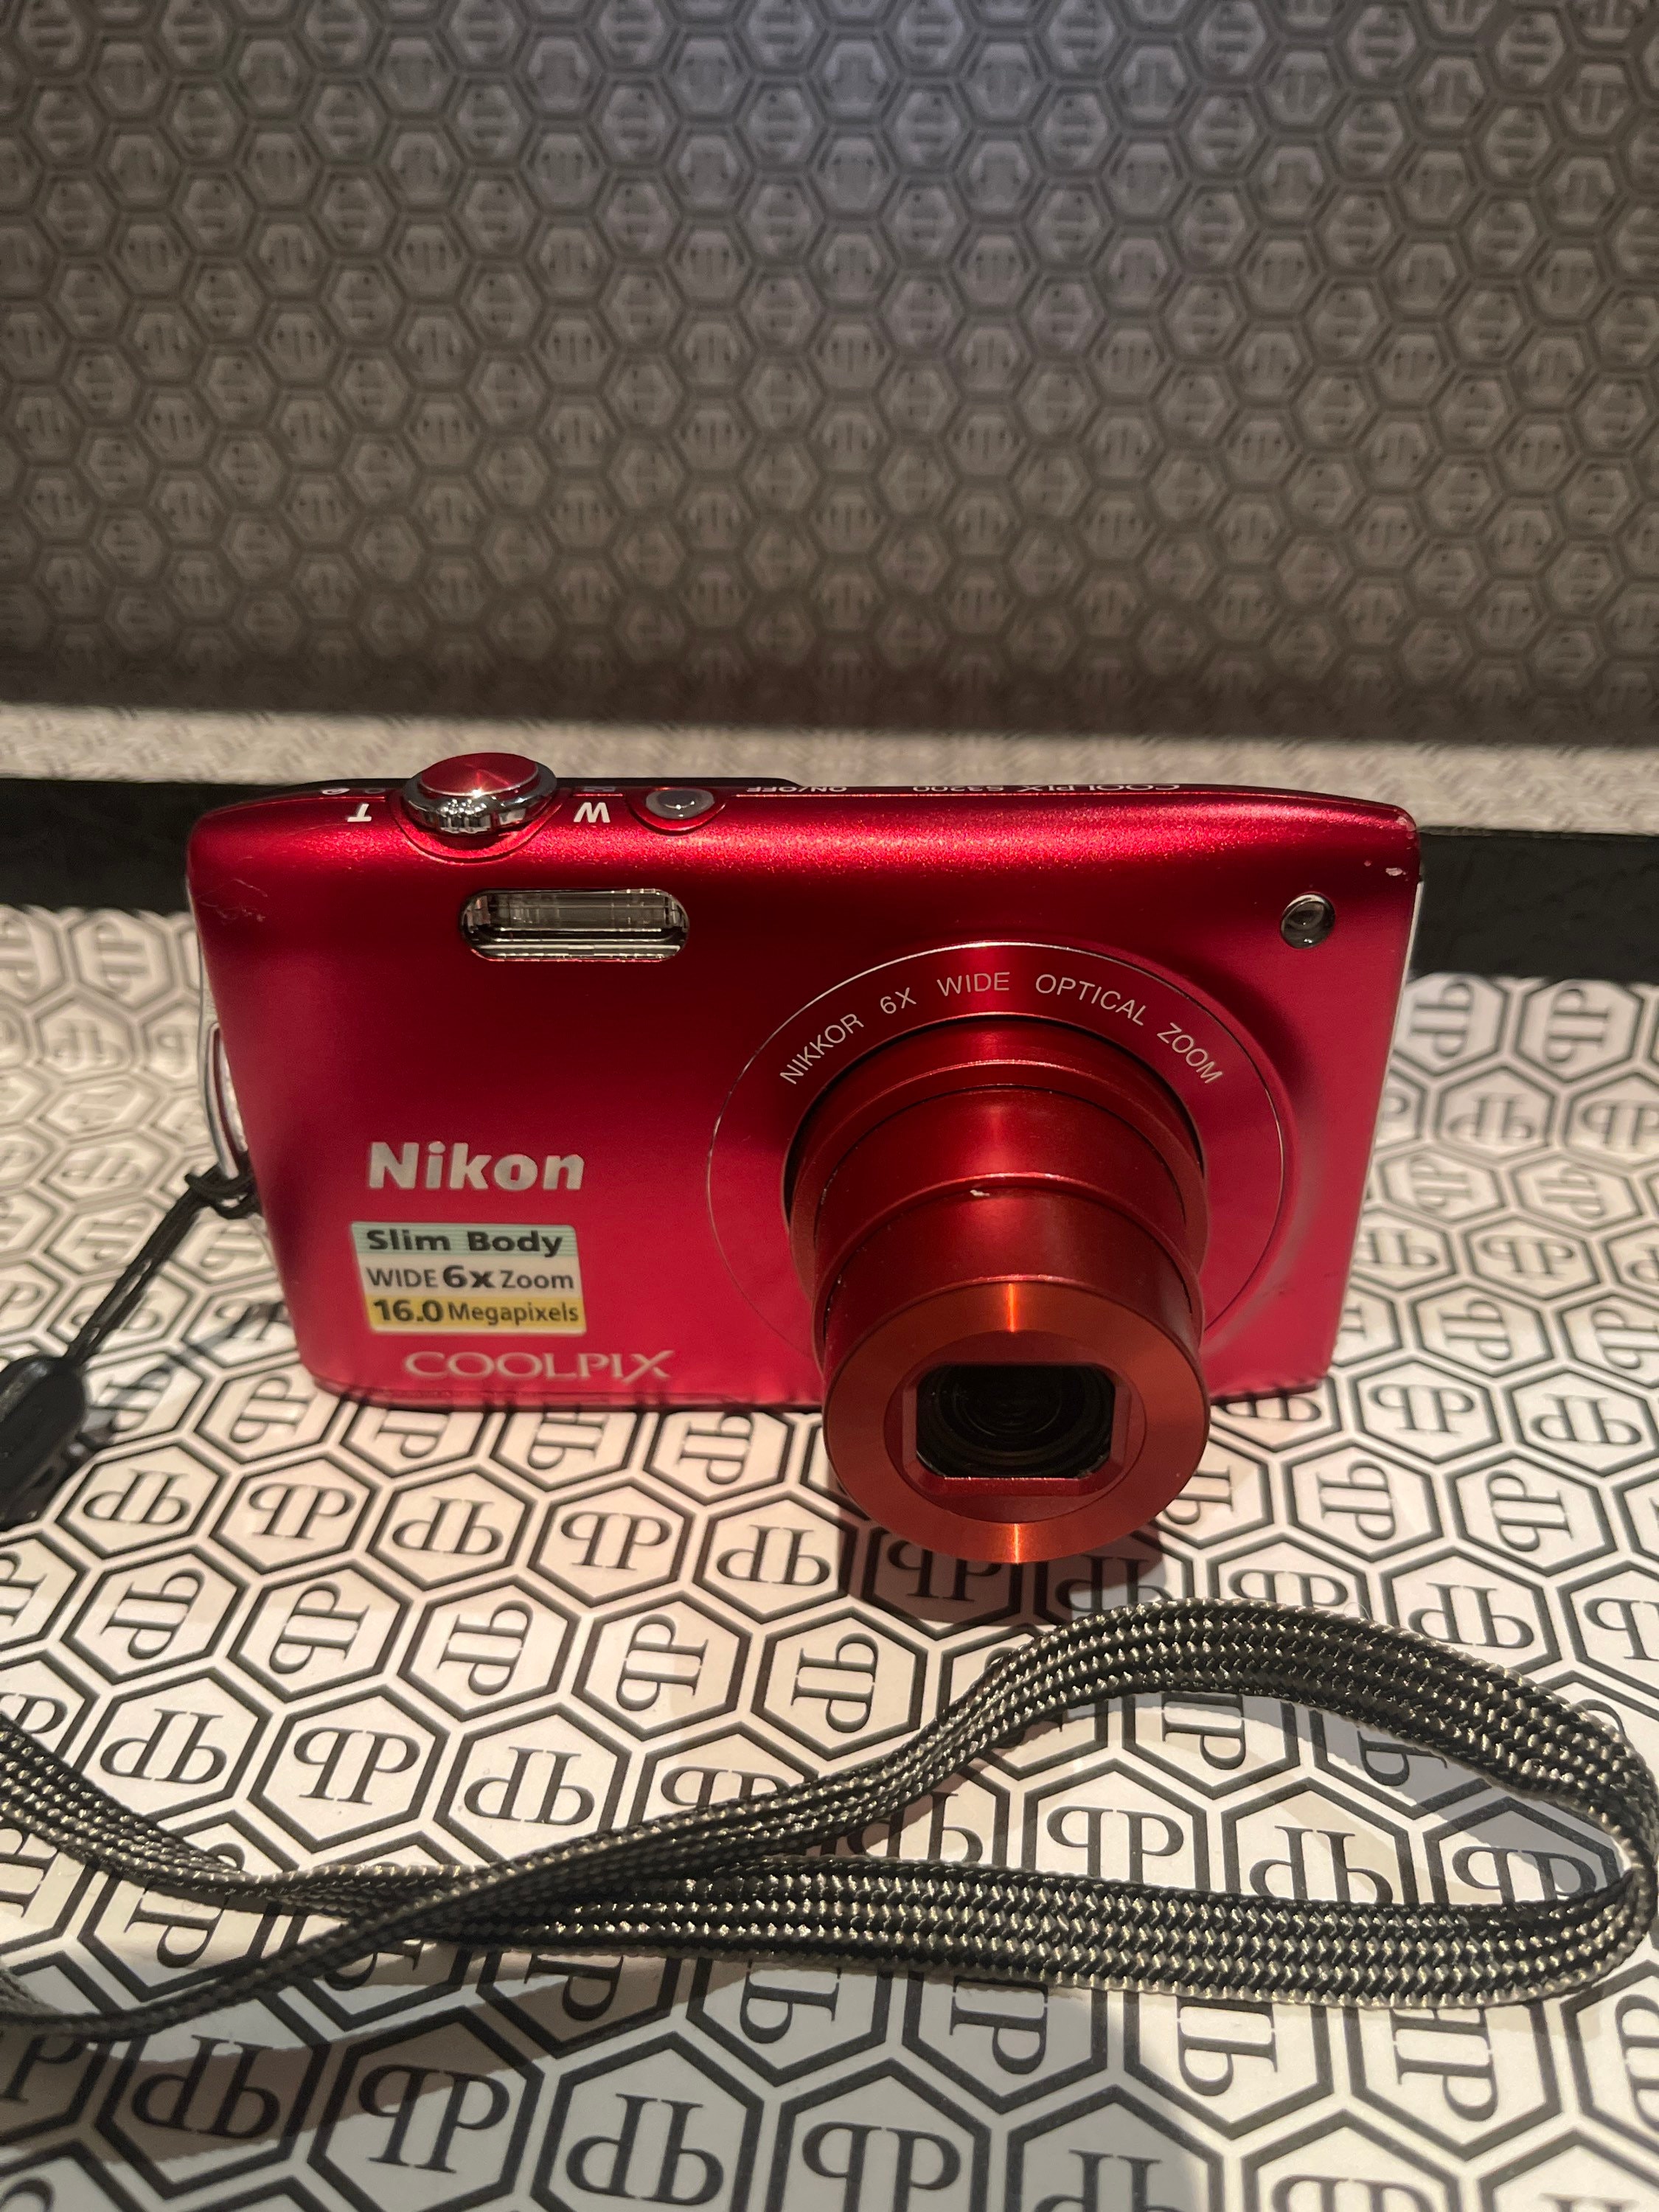 Cambios de Derrotado Rana Nikon Coolpix S3200 - Etsy